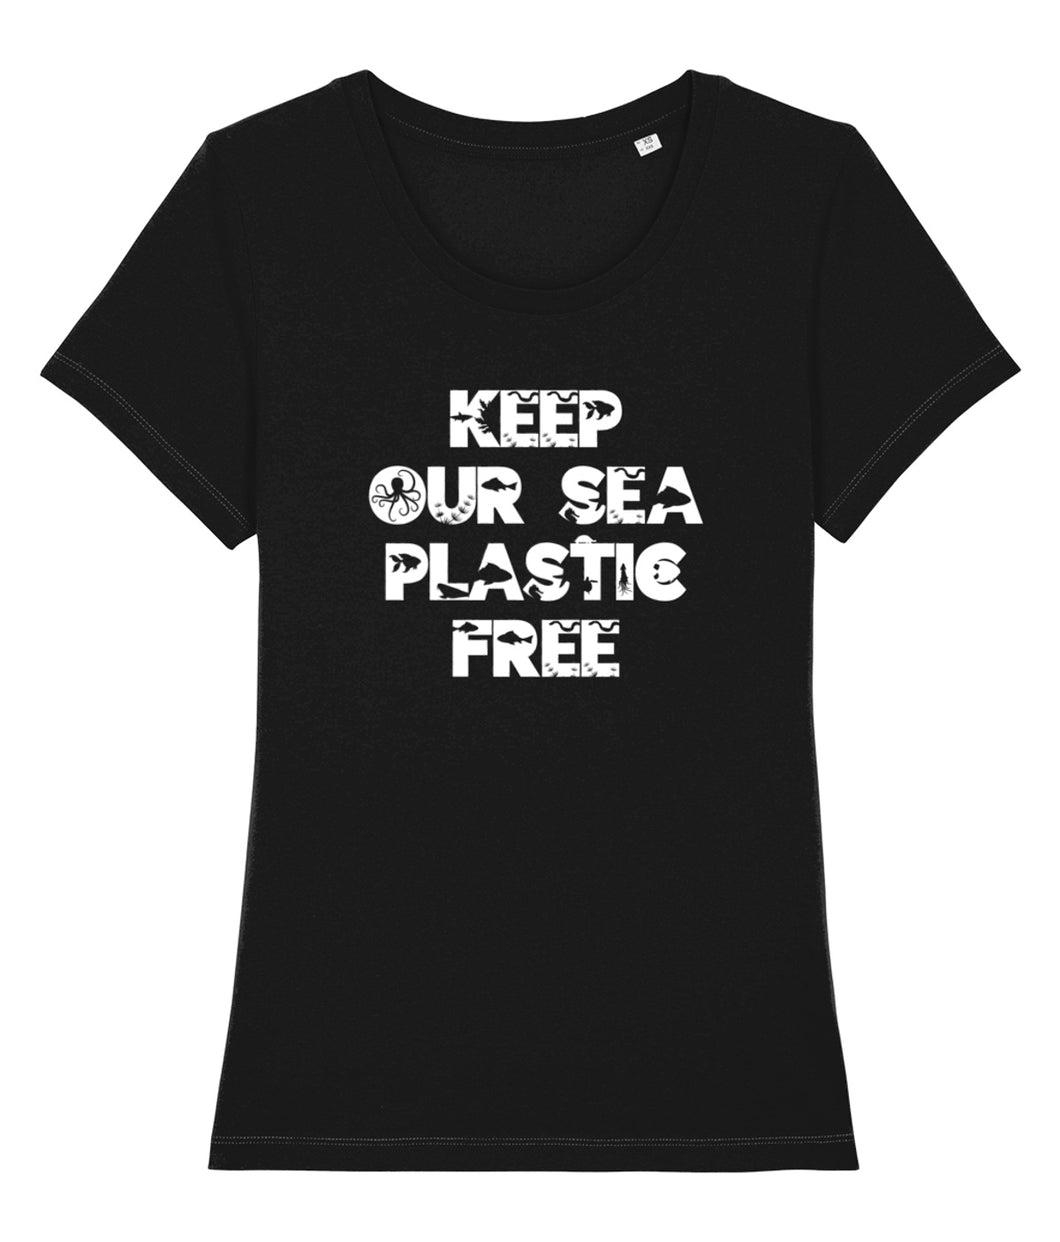 Keep our sea plastic free shirt black